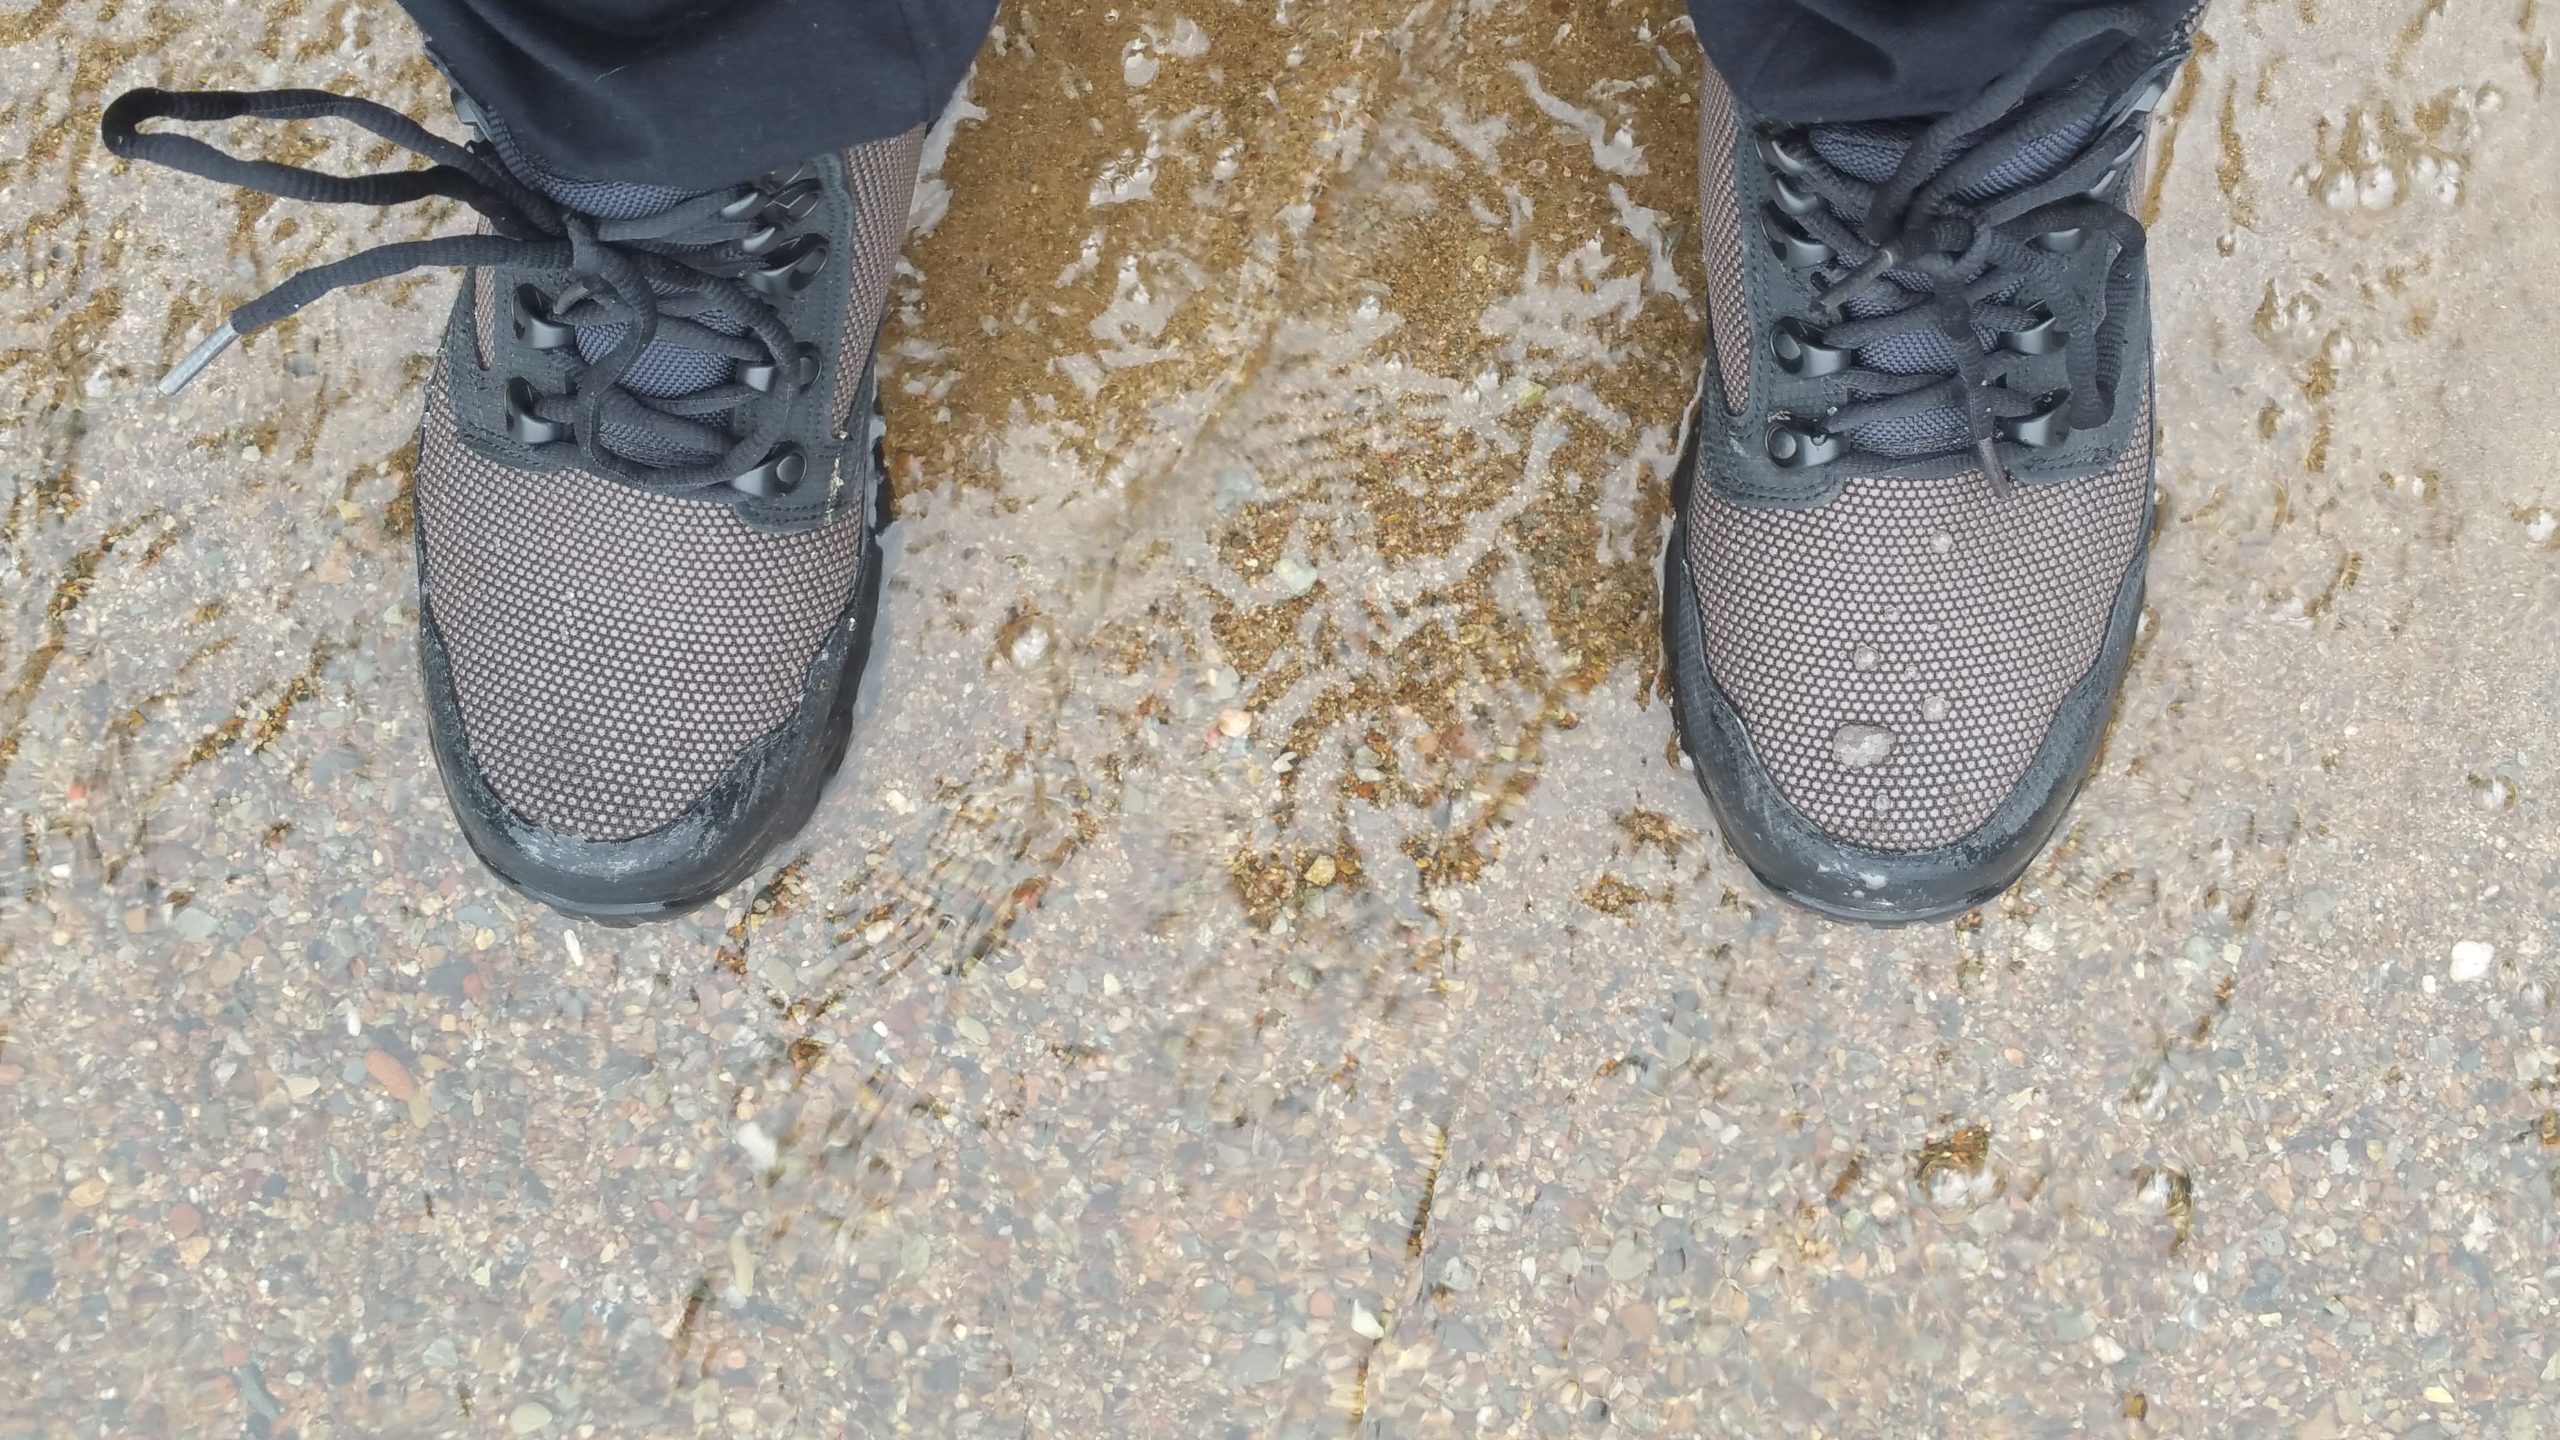 Waterproof Tactical Boot